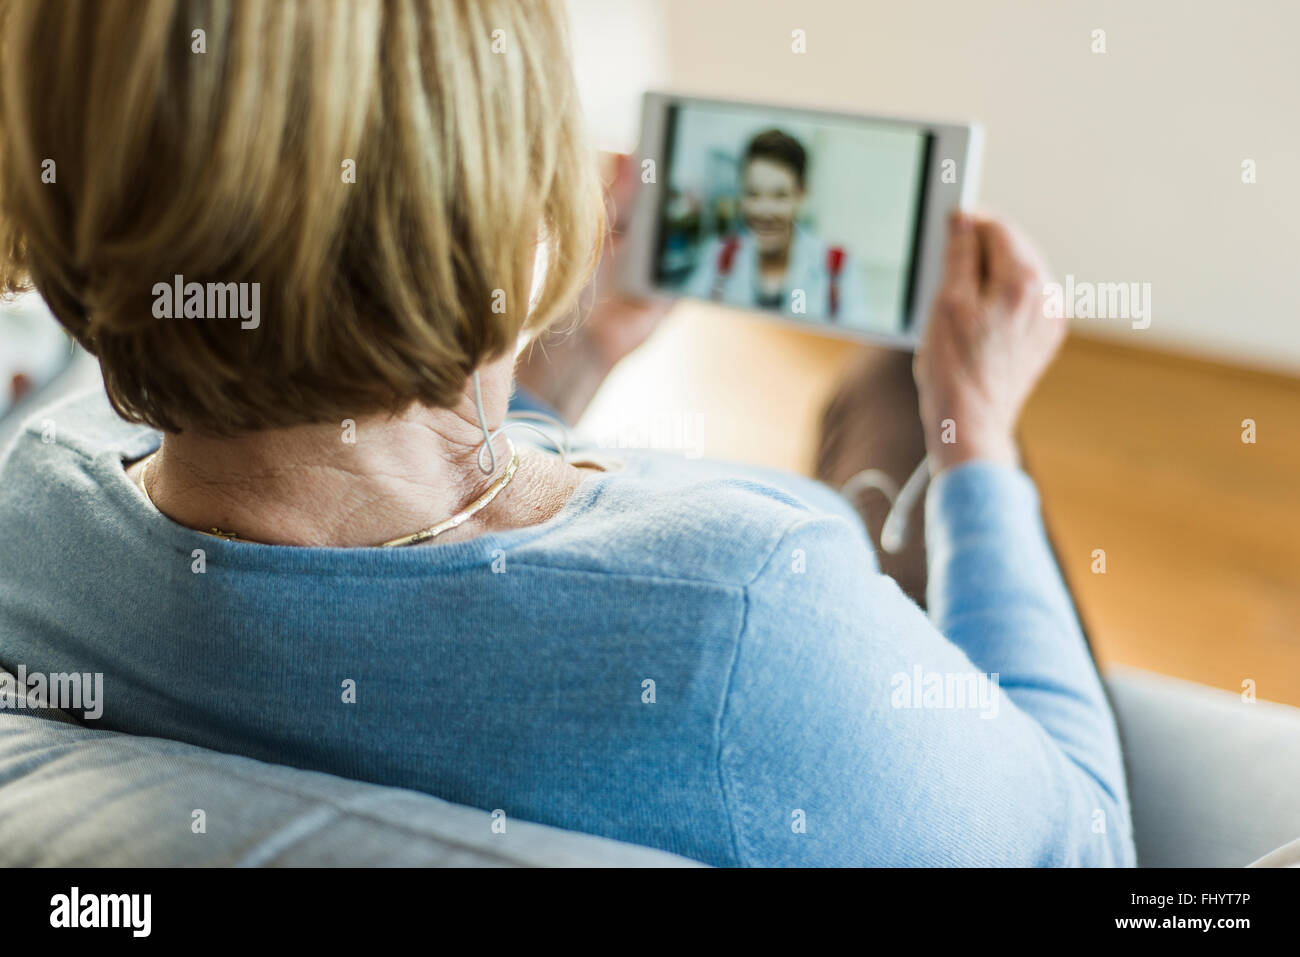 Senior woman looking at photo de jeune homme on digital tablet Banque D'Images